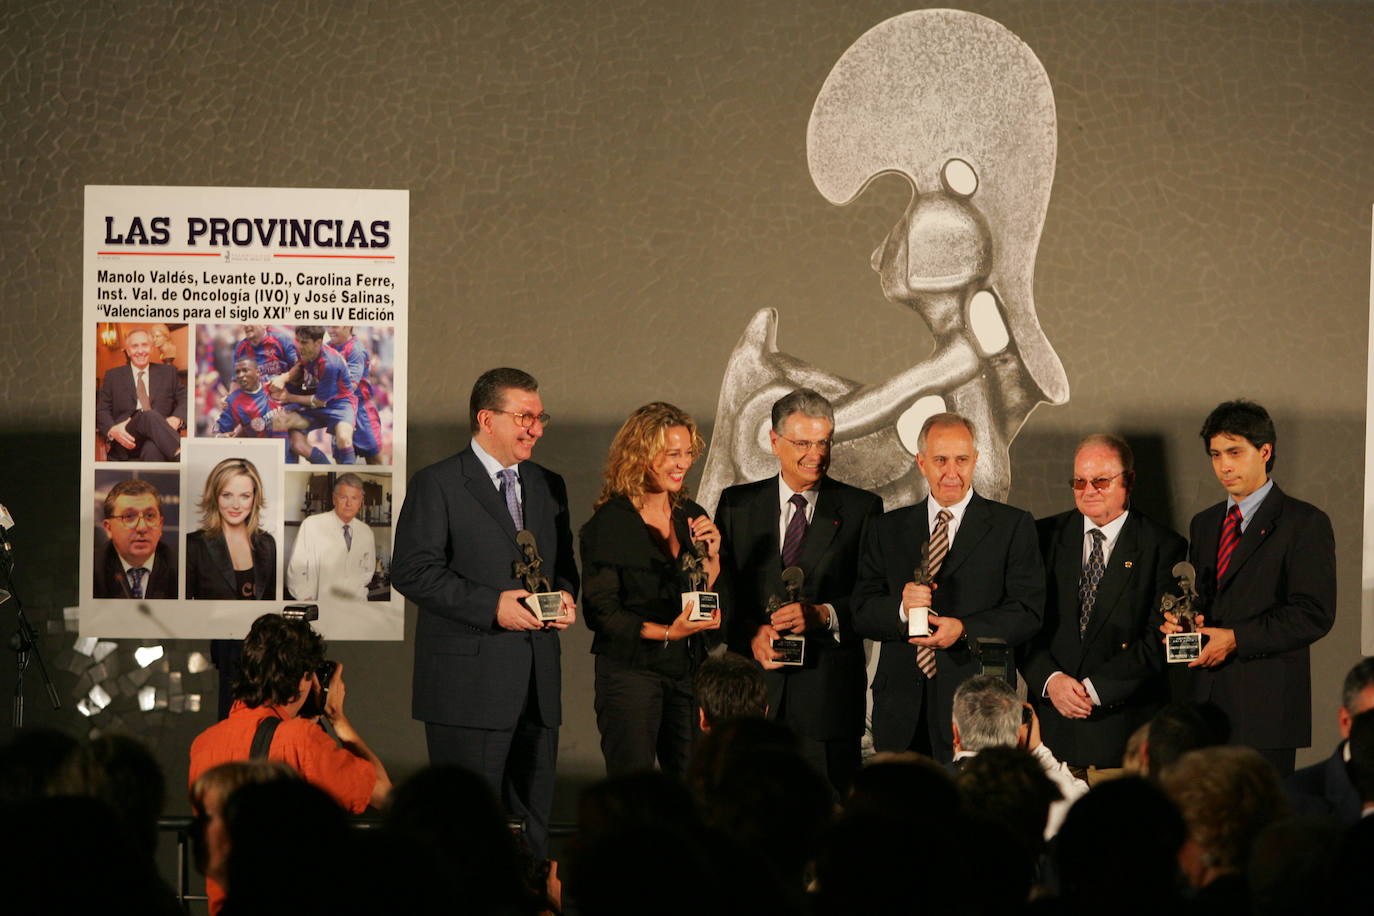 2004. IV edición de Valencianos para el Siglo XXI. Premiados: IVO, Carolina Ferre, Manolo Valdés, Levante UD y José Salinas.